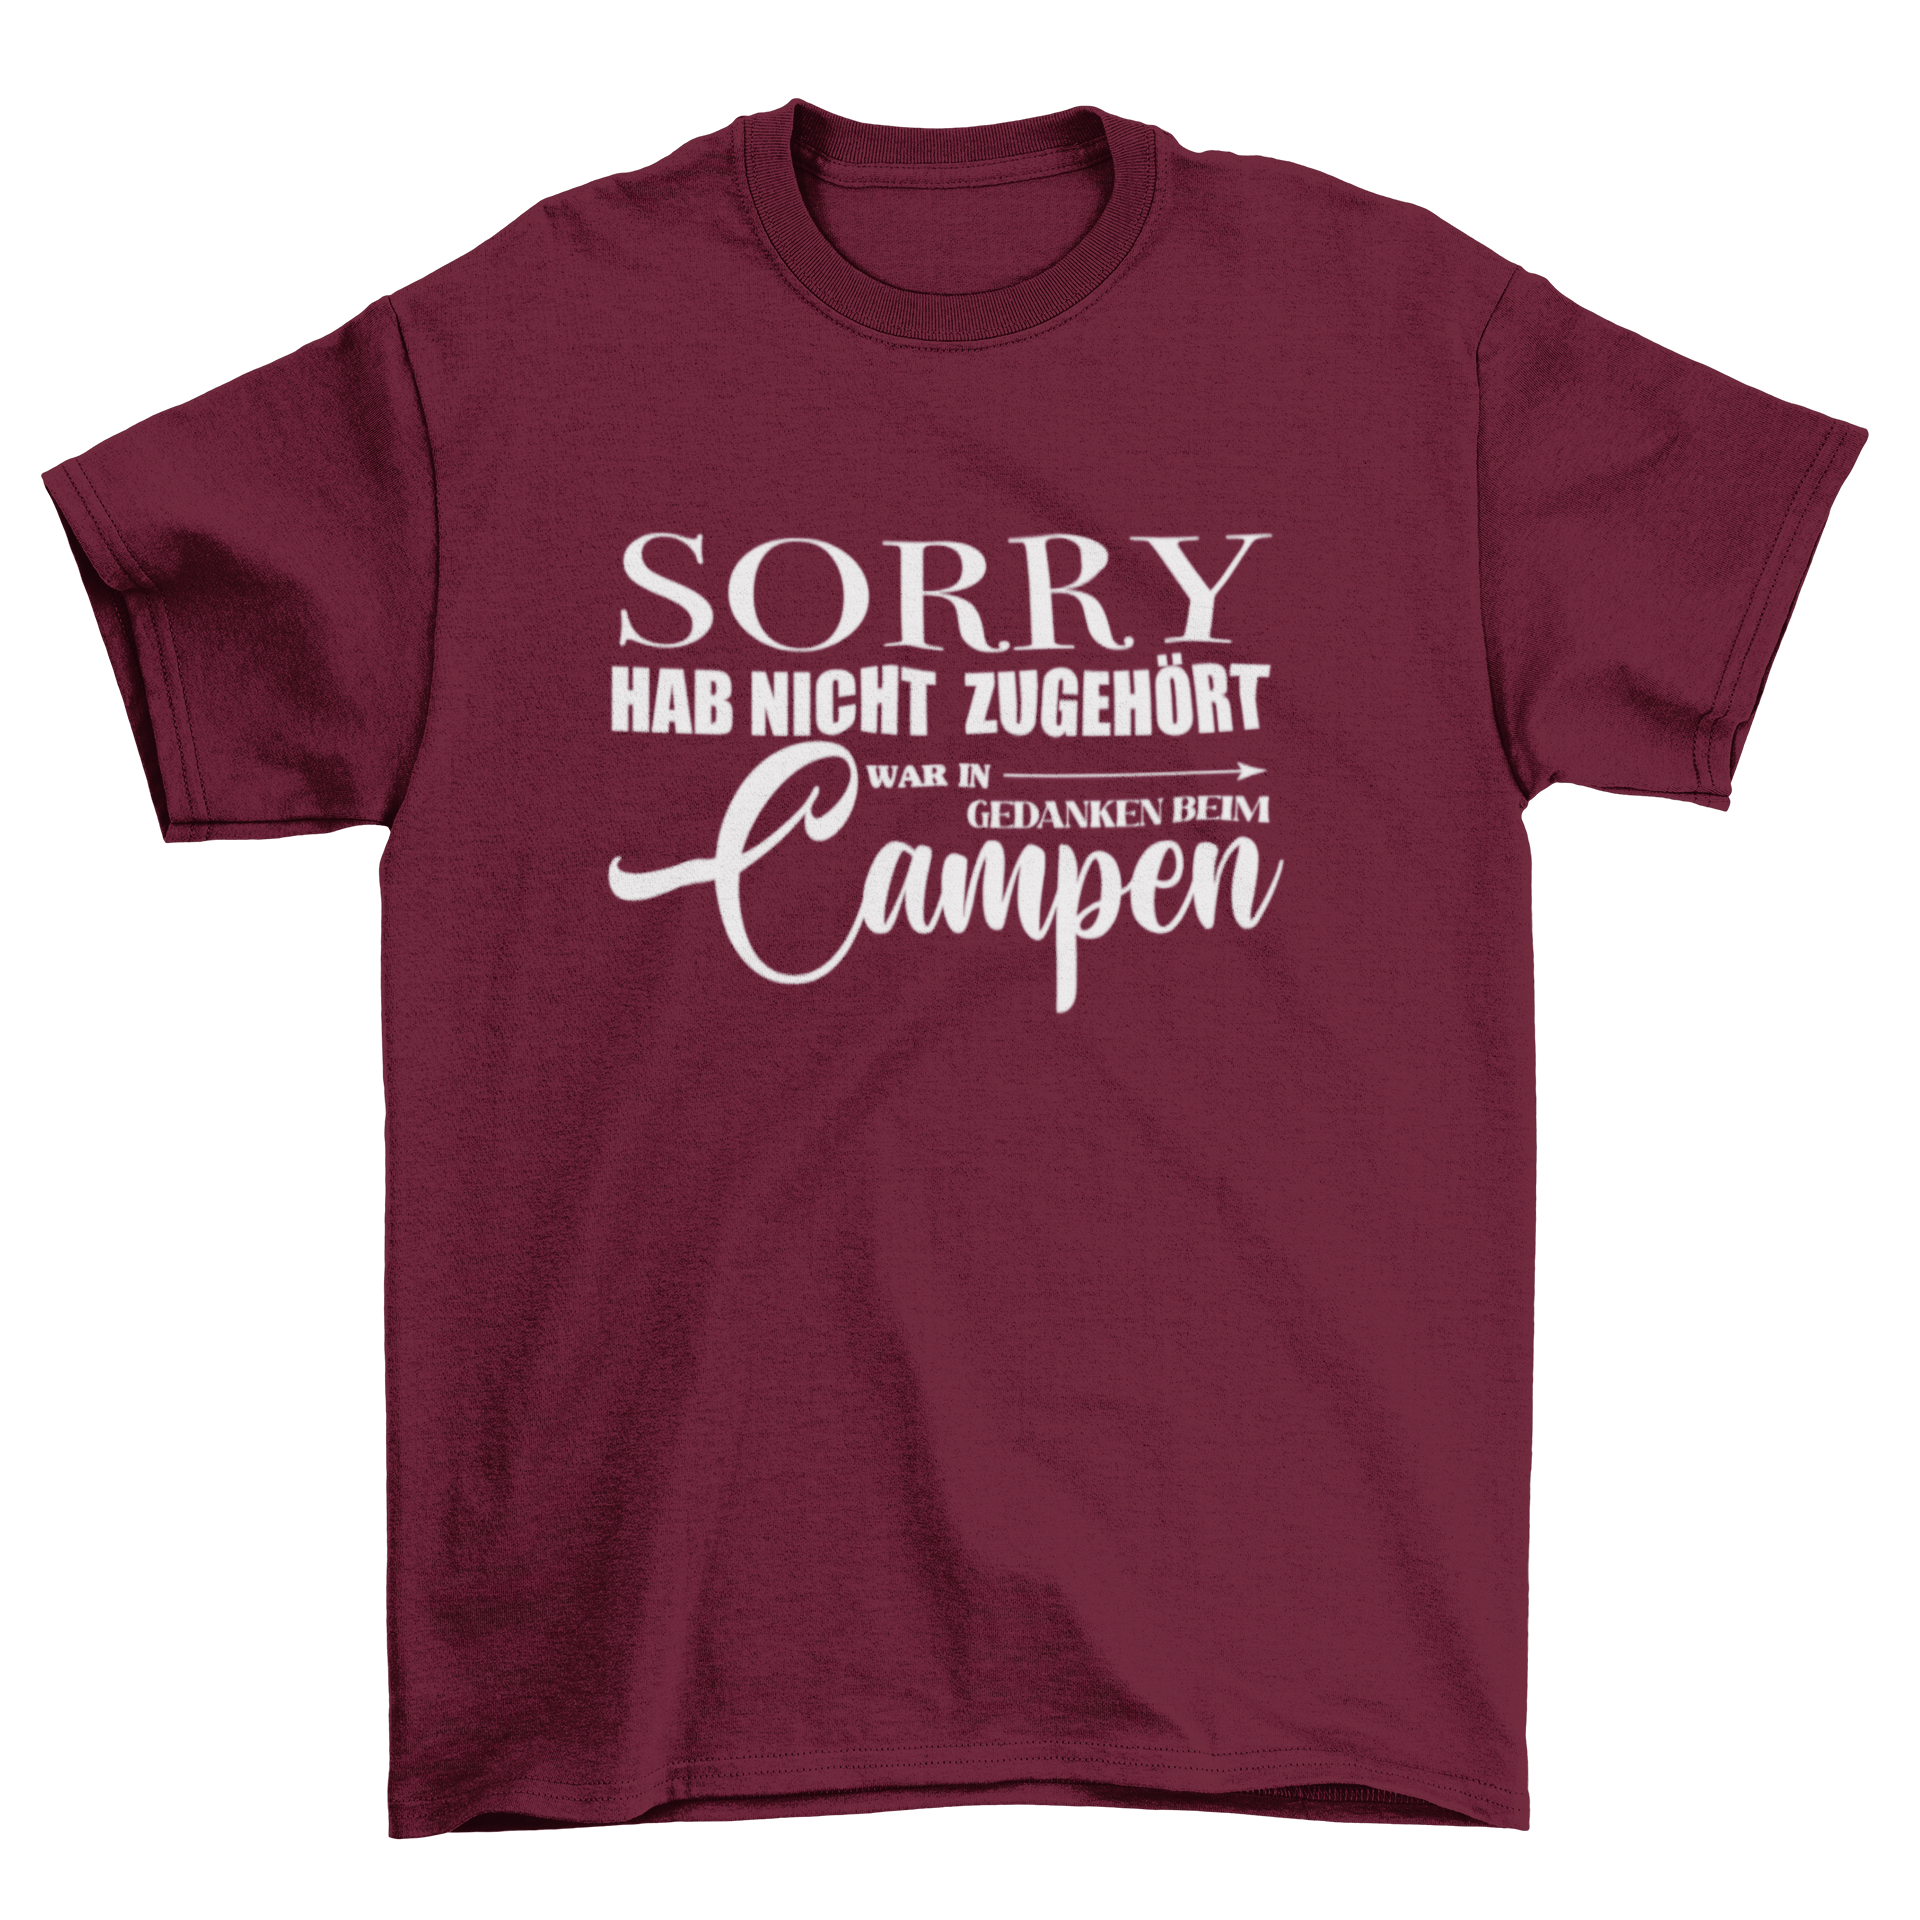 Sorry hab nicht zugehört  - T-Shirt